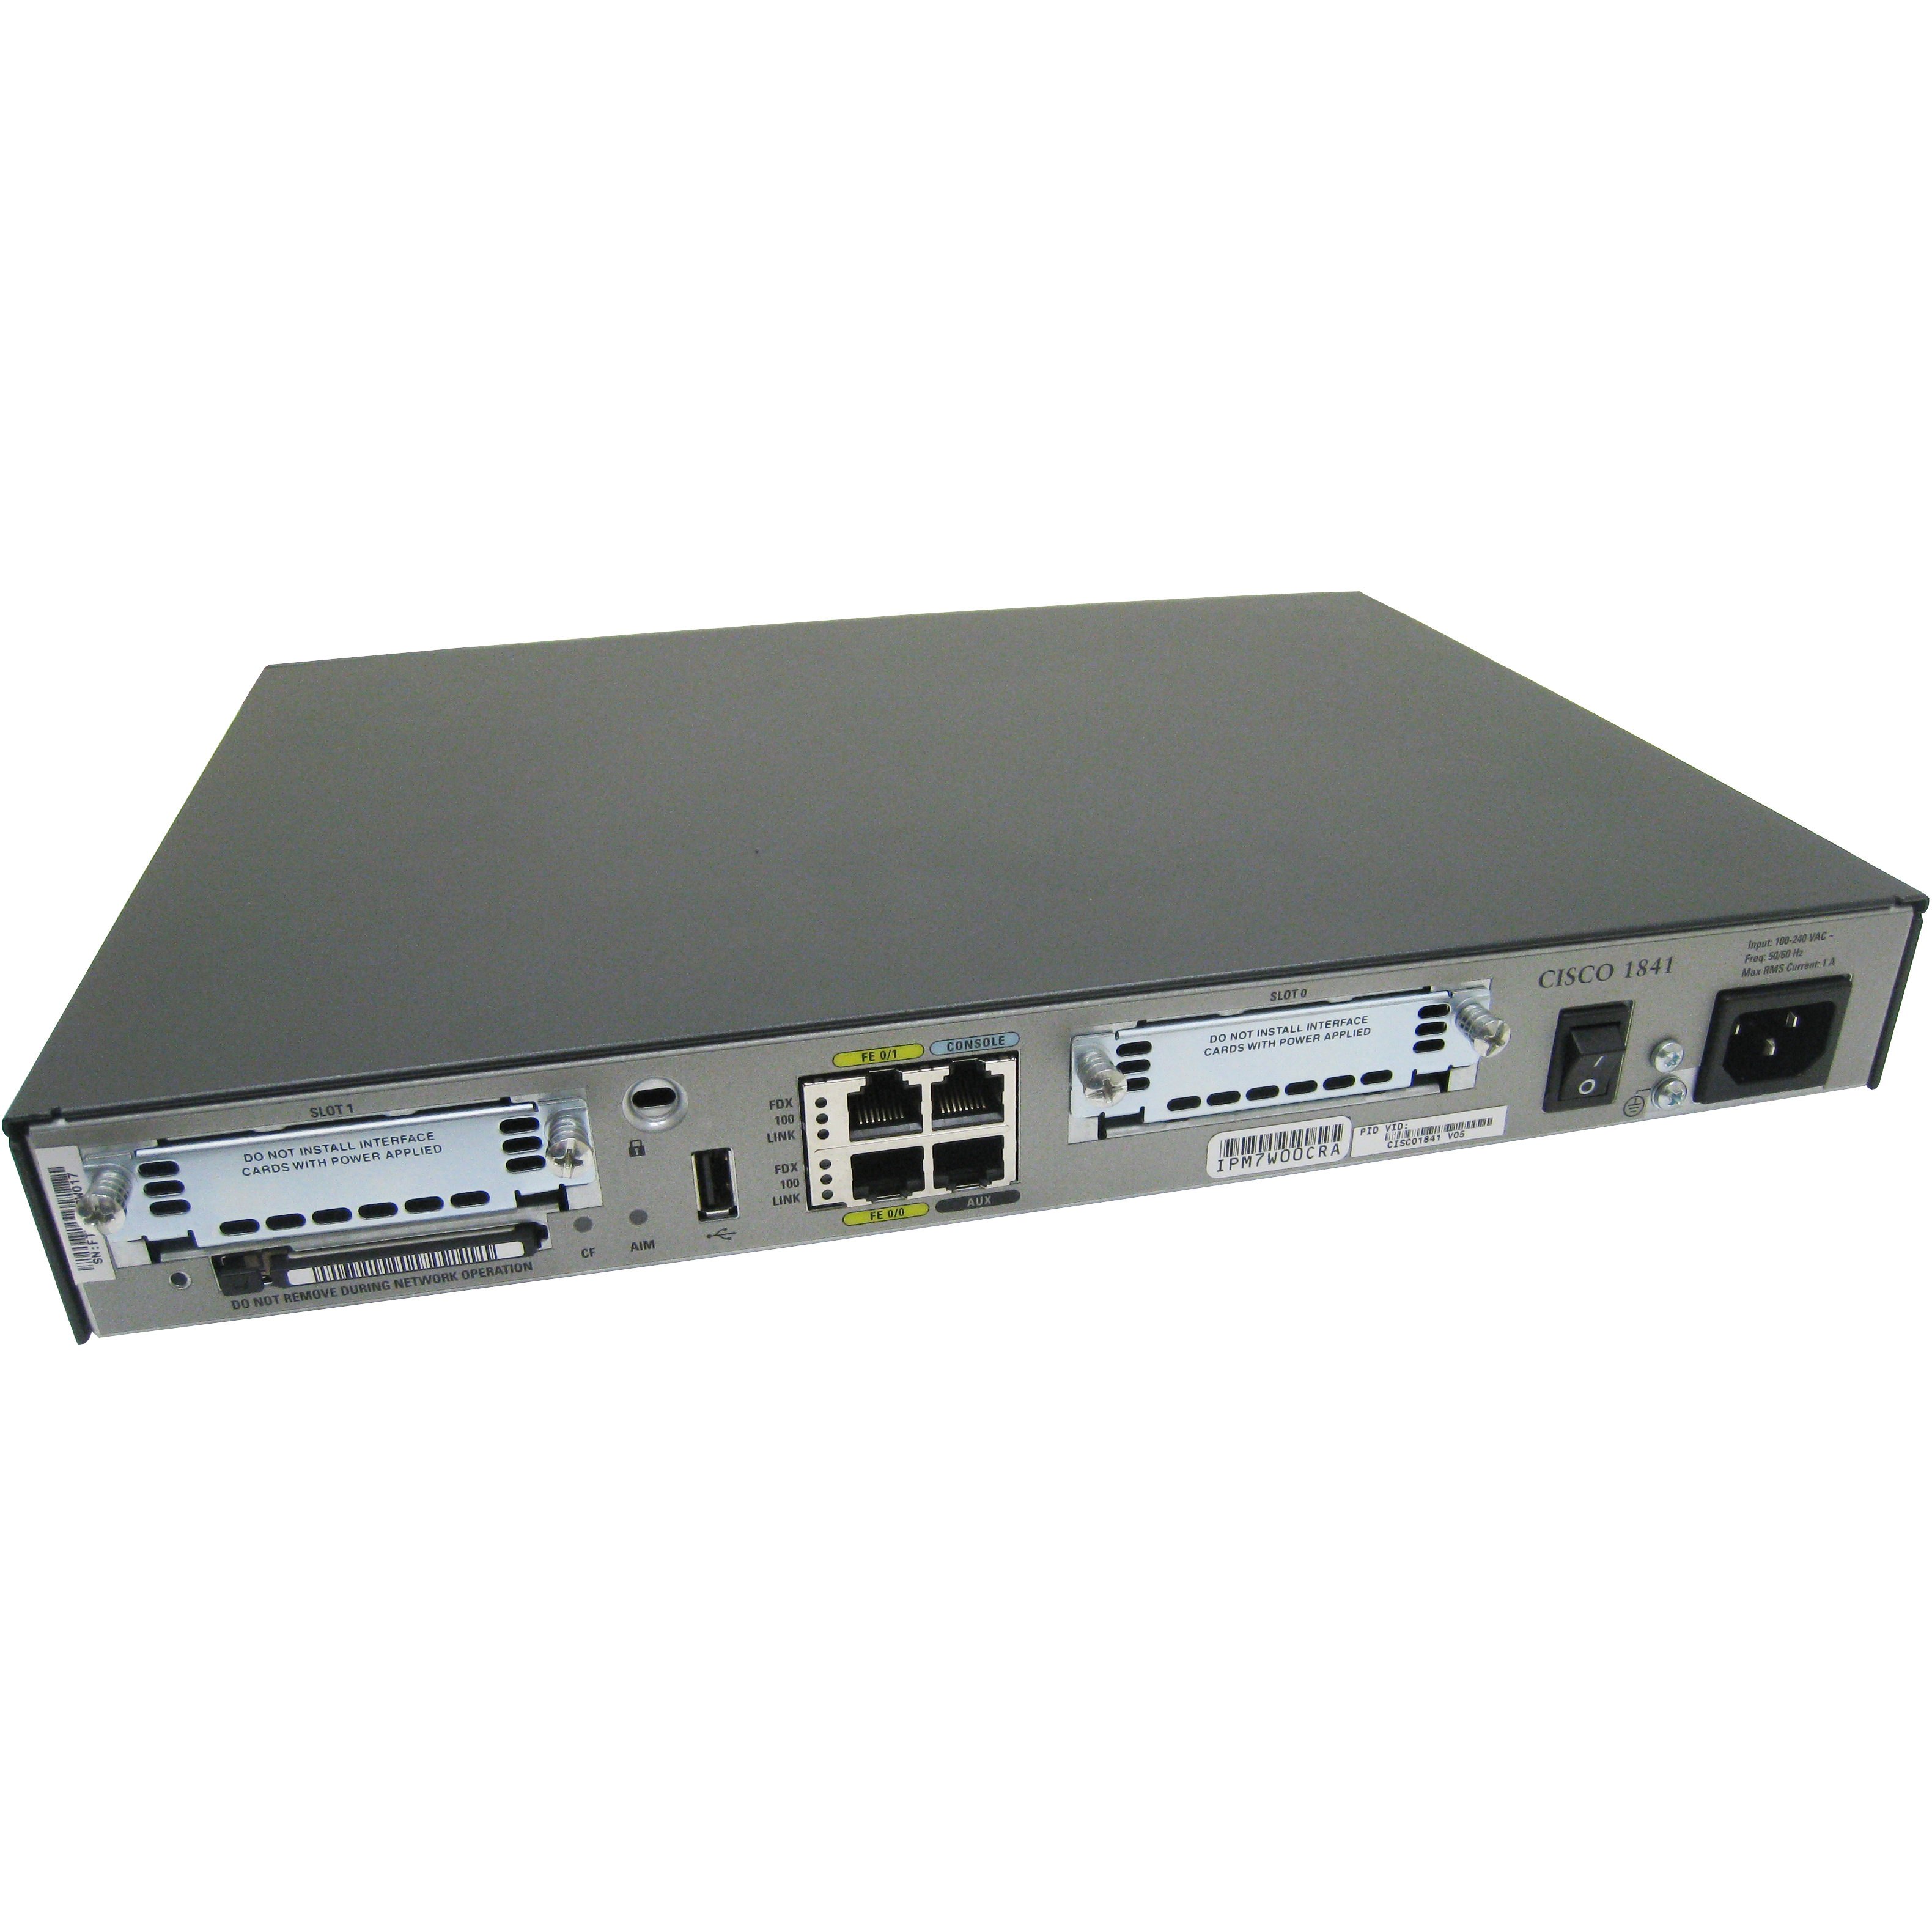 Cisco CISCO1841-HSEC/K9-SSL-1